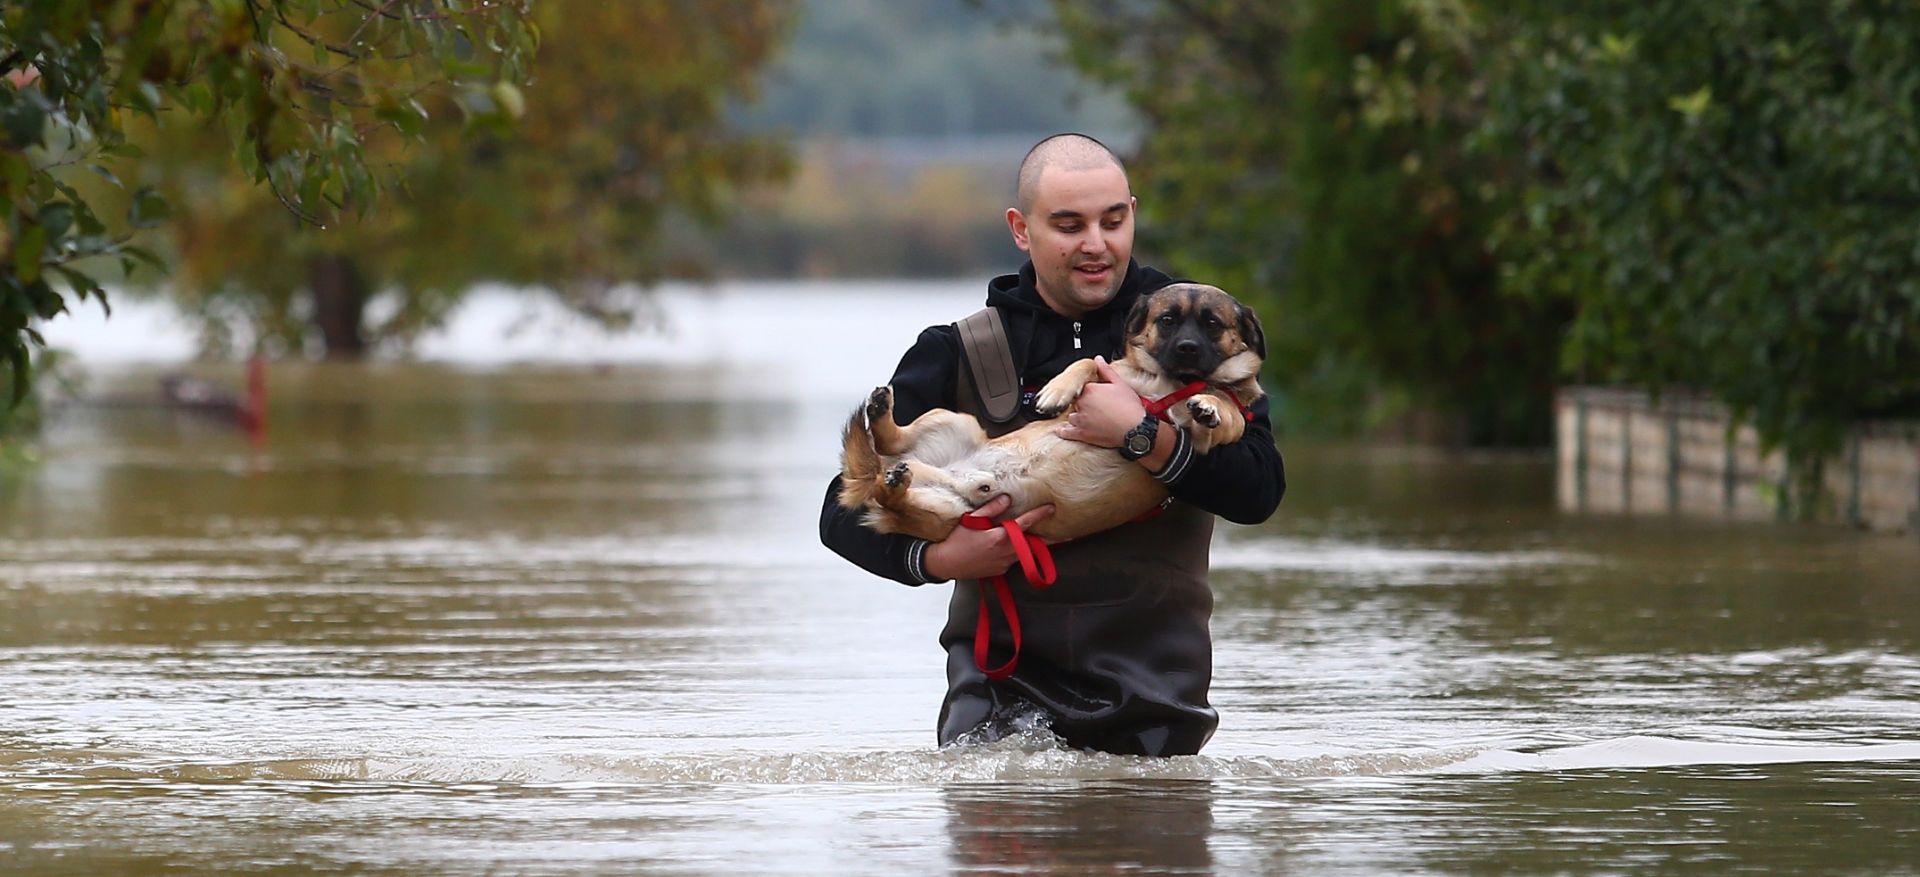 16.10.2015., Karlovac - Zbog nabujalih rijeka prigradska naselja su poplavljena.
Photo: Slavko Midzor/PIXSELL